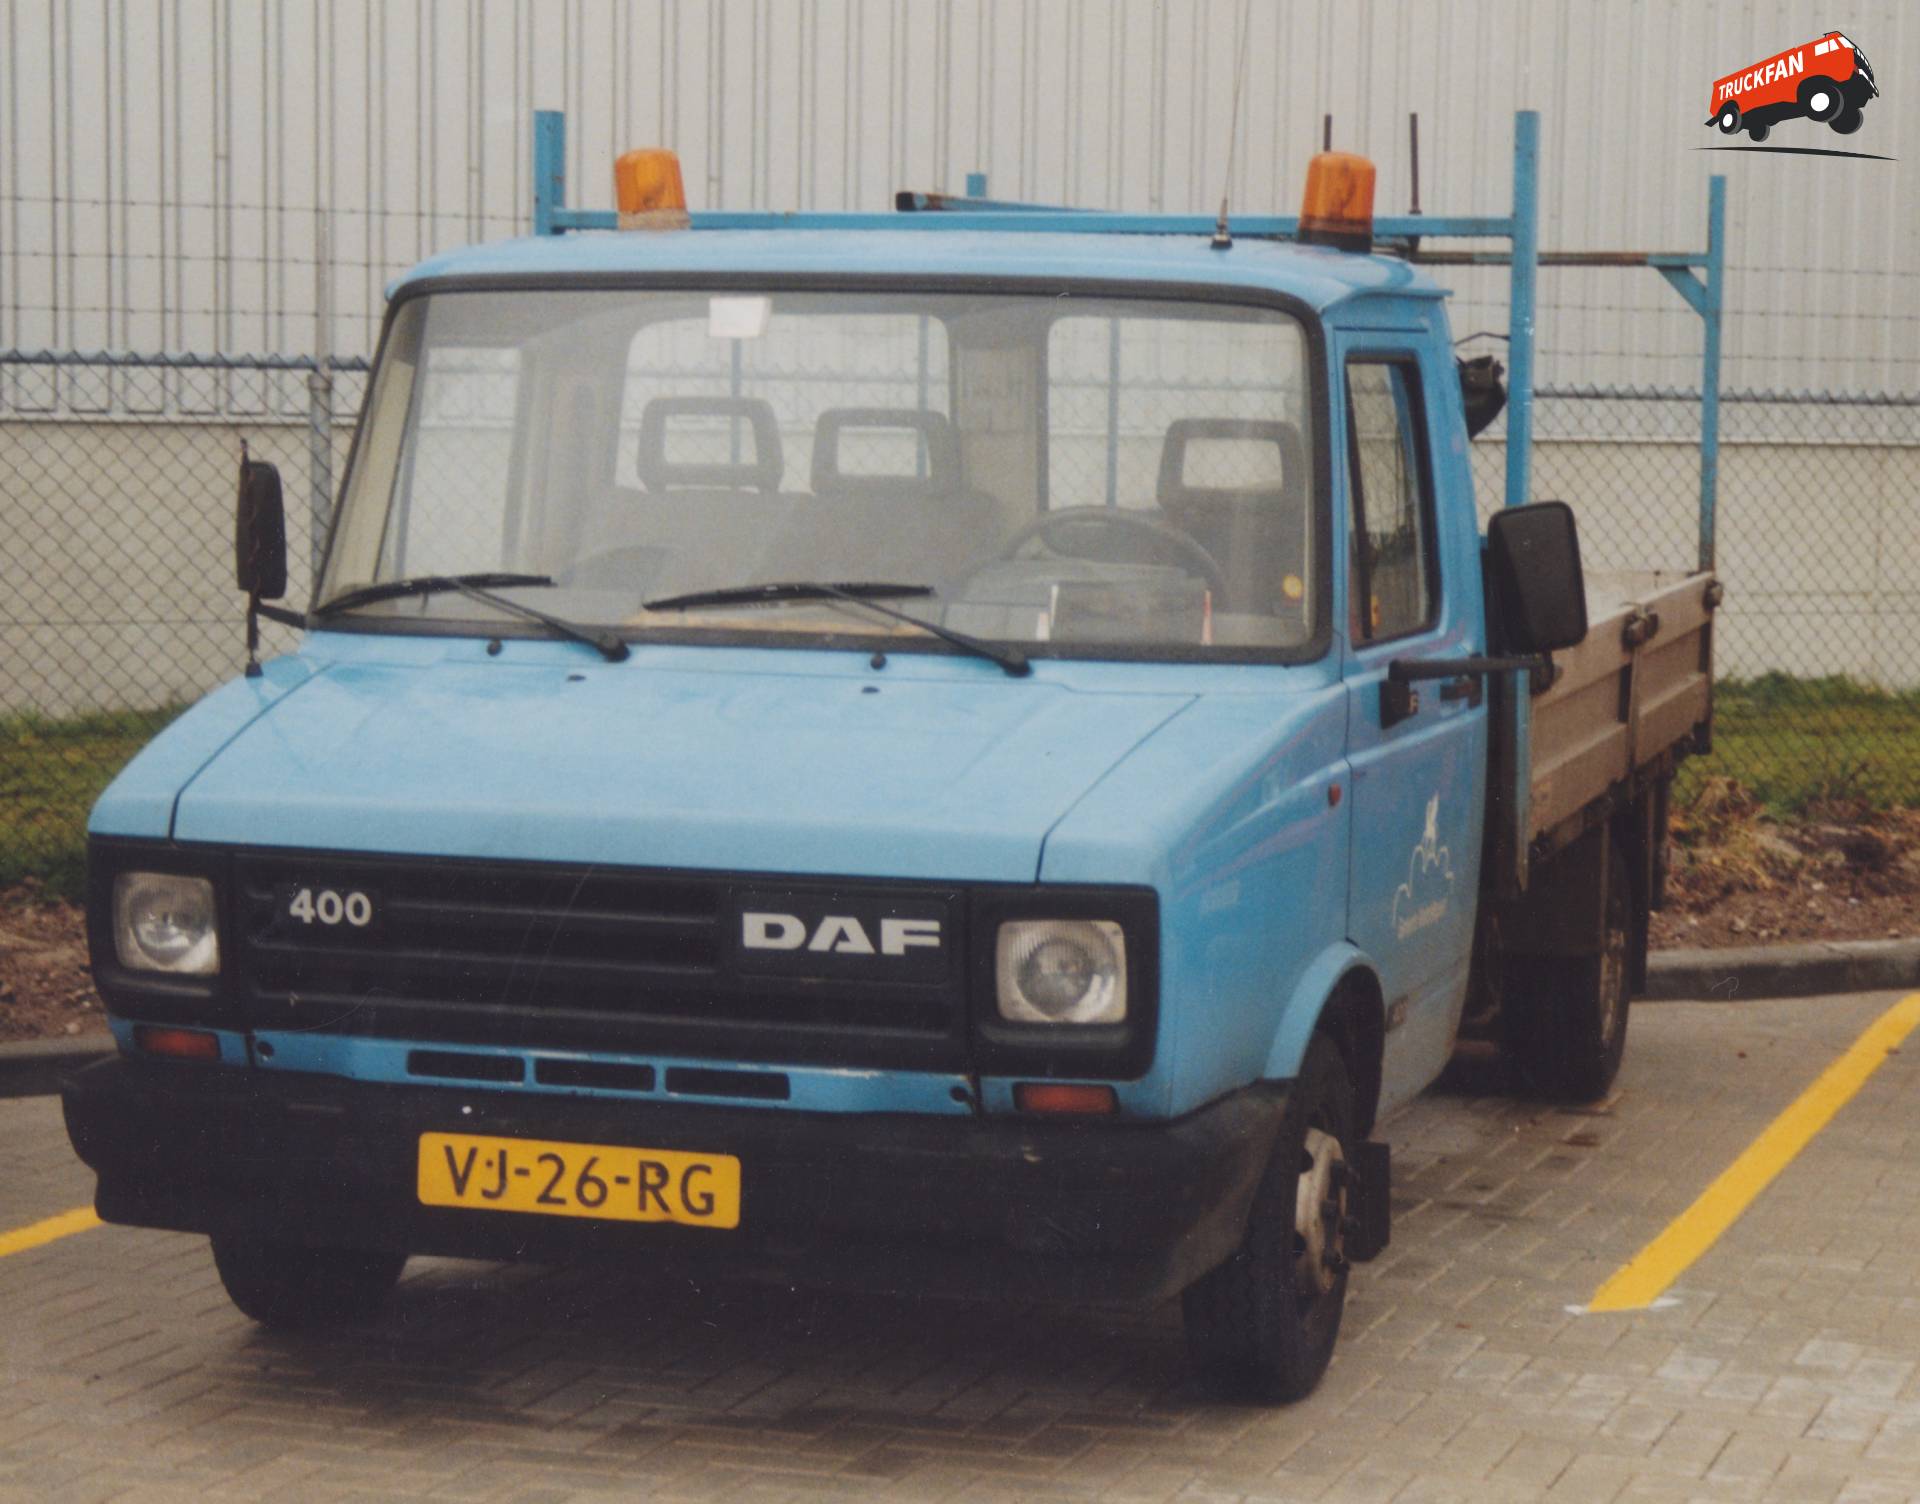 DAF 400